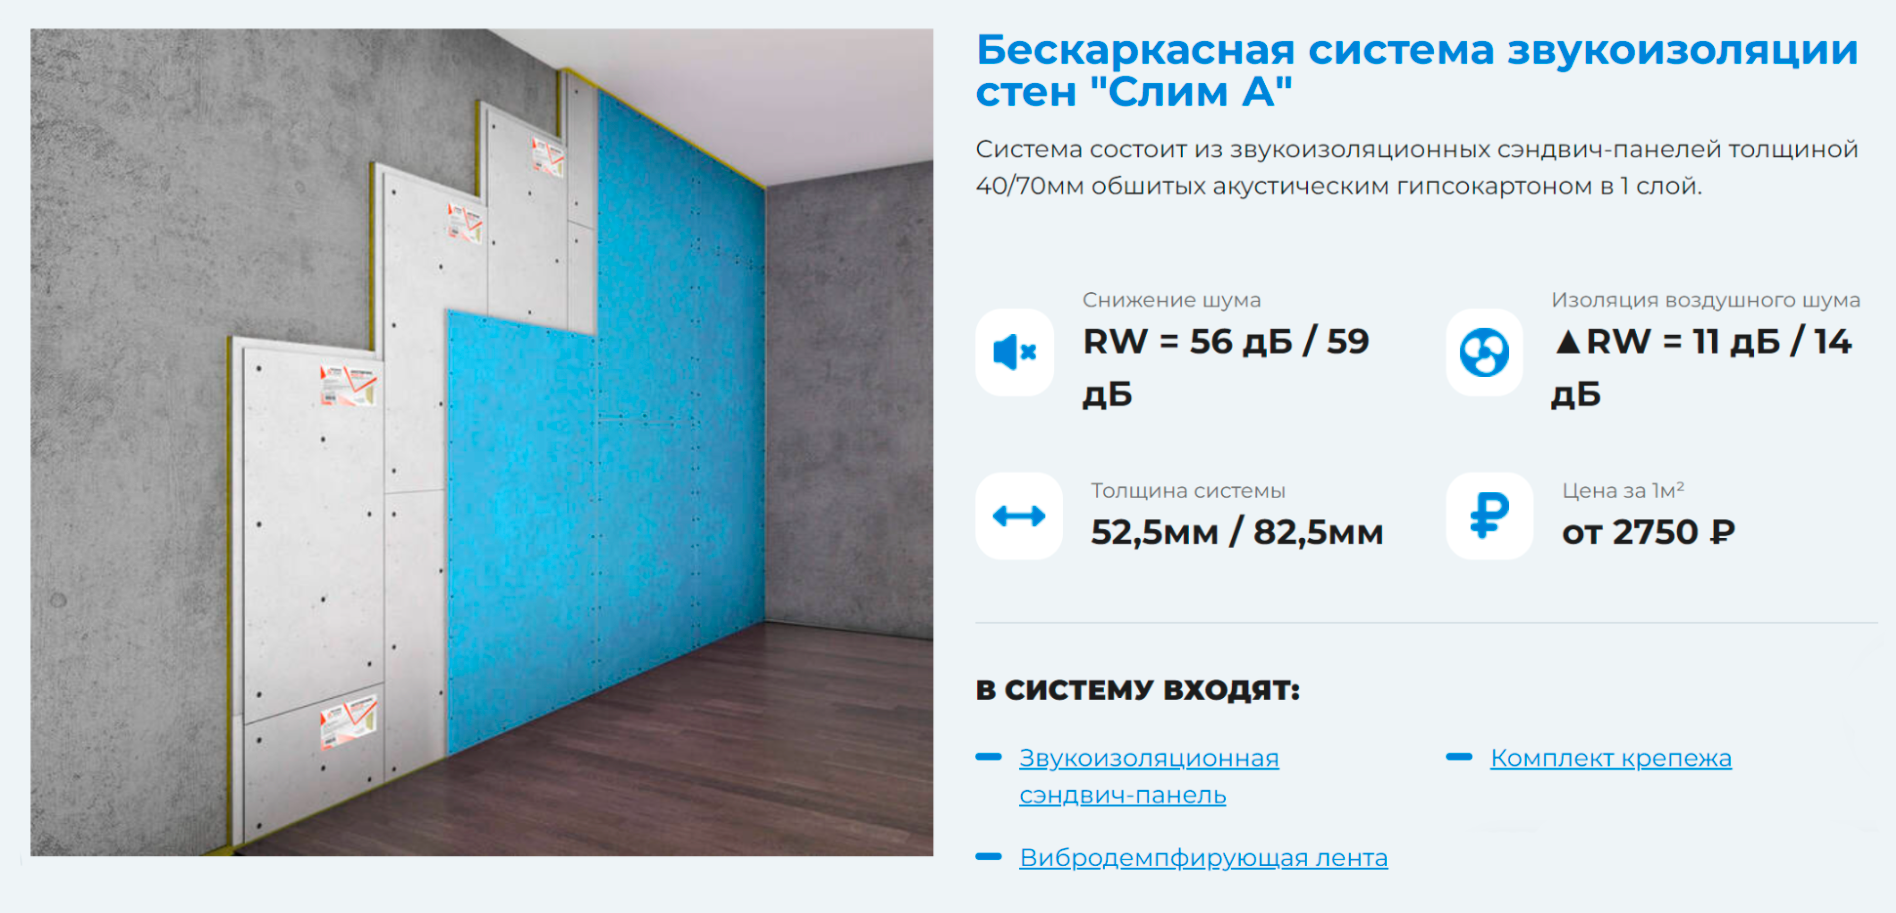 Бескаркасную систему крепят сразу к стене с помощью дюбелей и саморезов. Толщина «пирога» — 52,5⁠—⁠82,5 мм, цена — от 2750 ₽ за 1 м². Источник: smartscoustic.ru